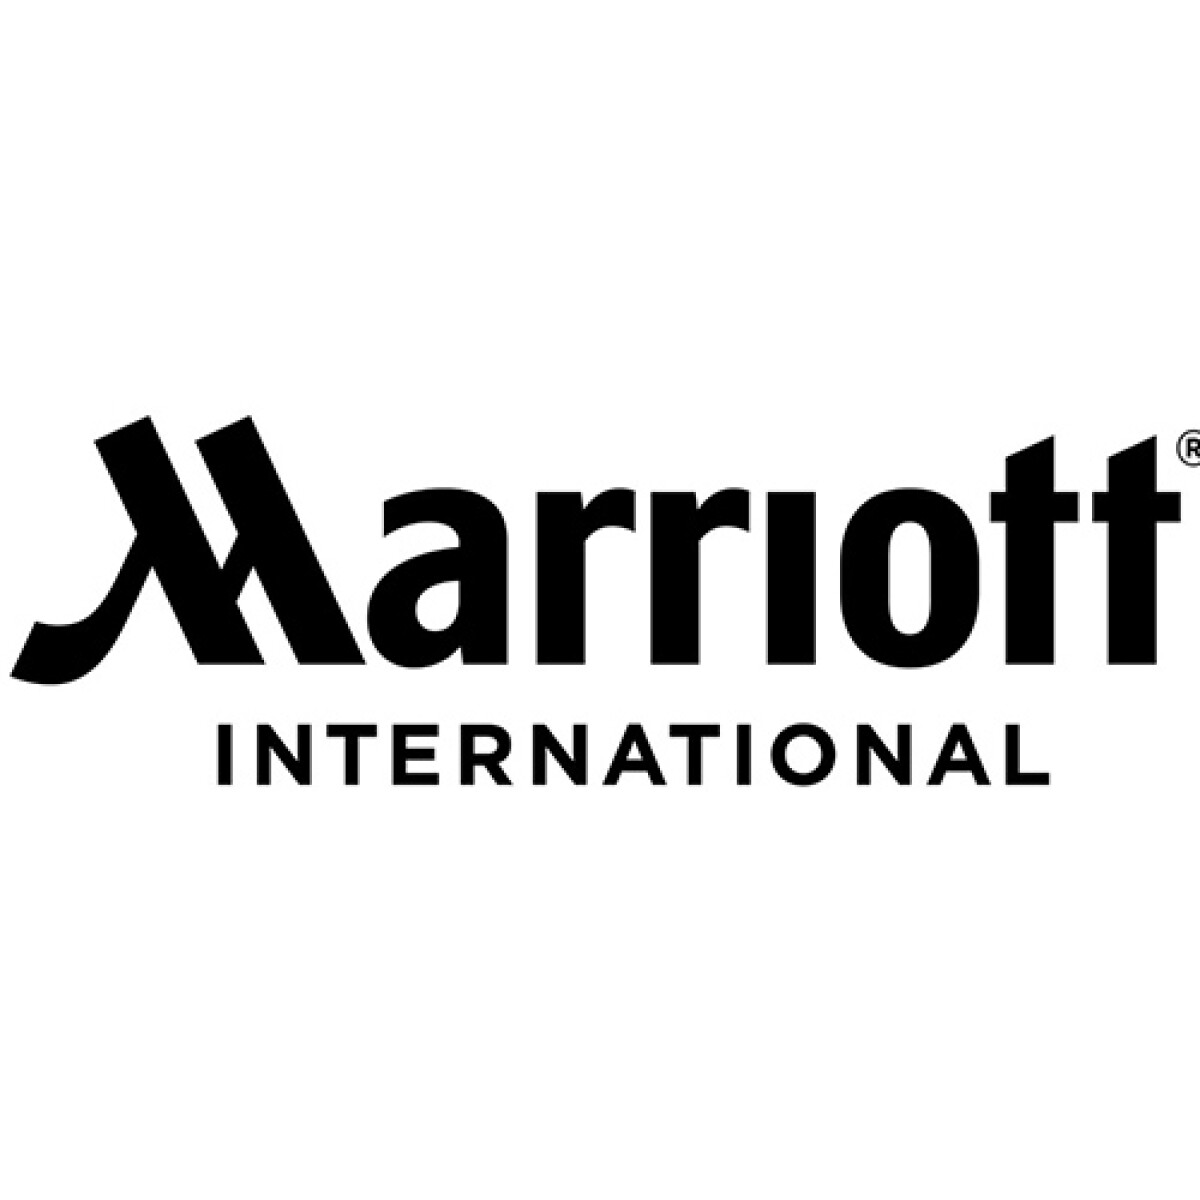 news.marriott.com